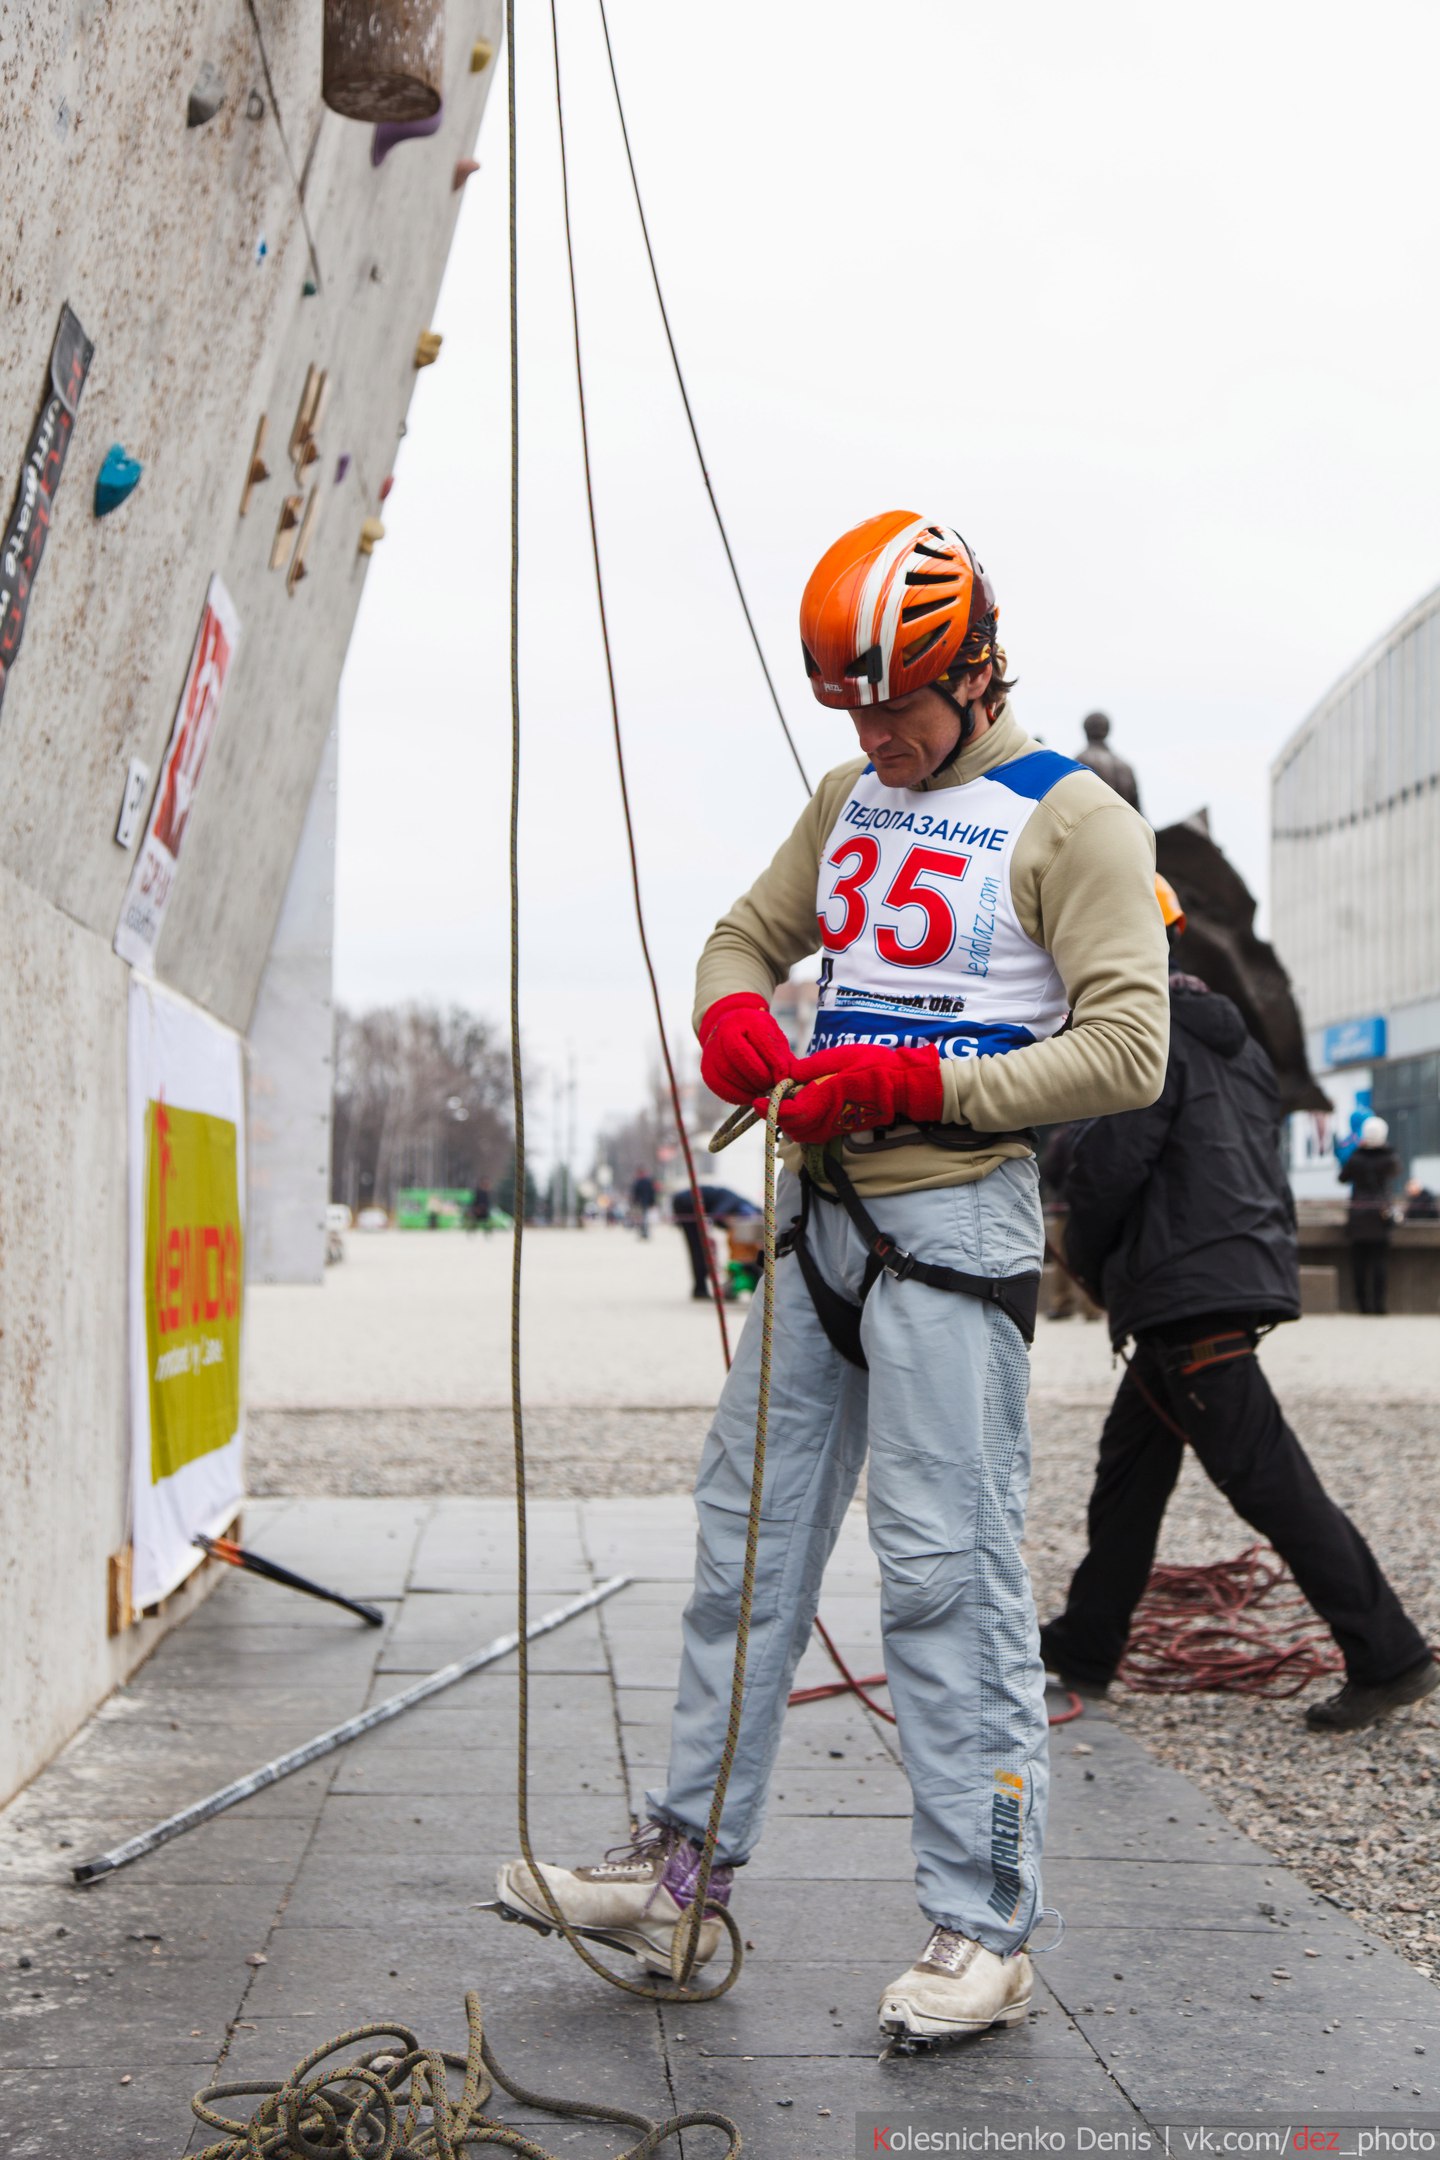 Чемпионат Украины по ледолазанию 2016 года. Фото Дениса Колесниченко